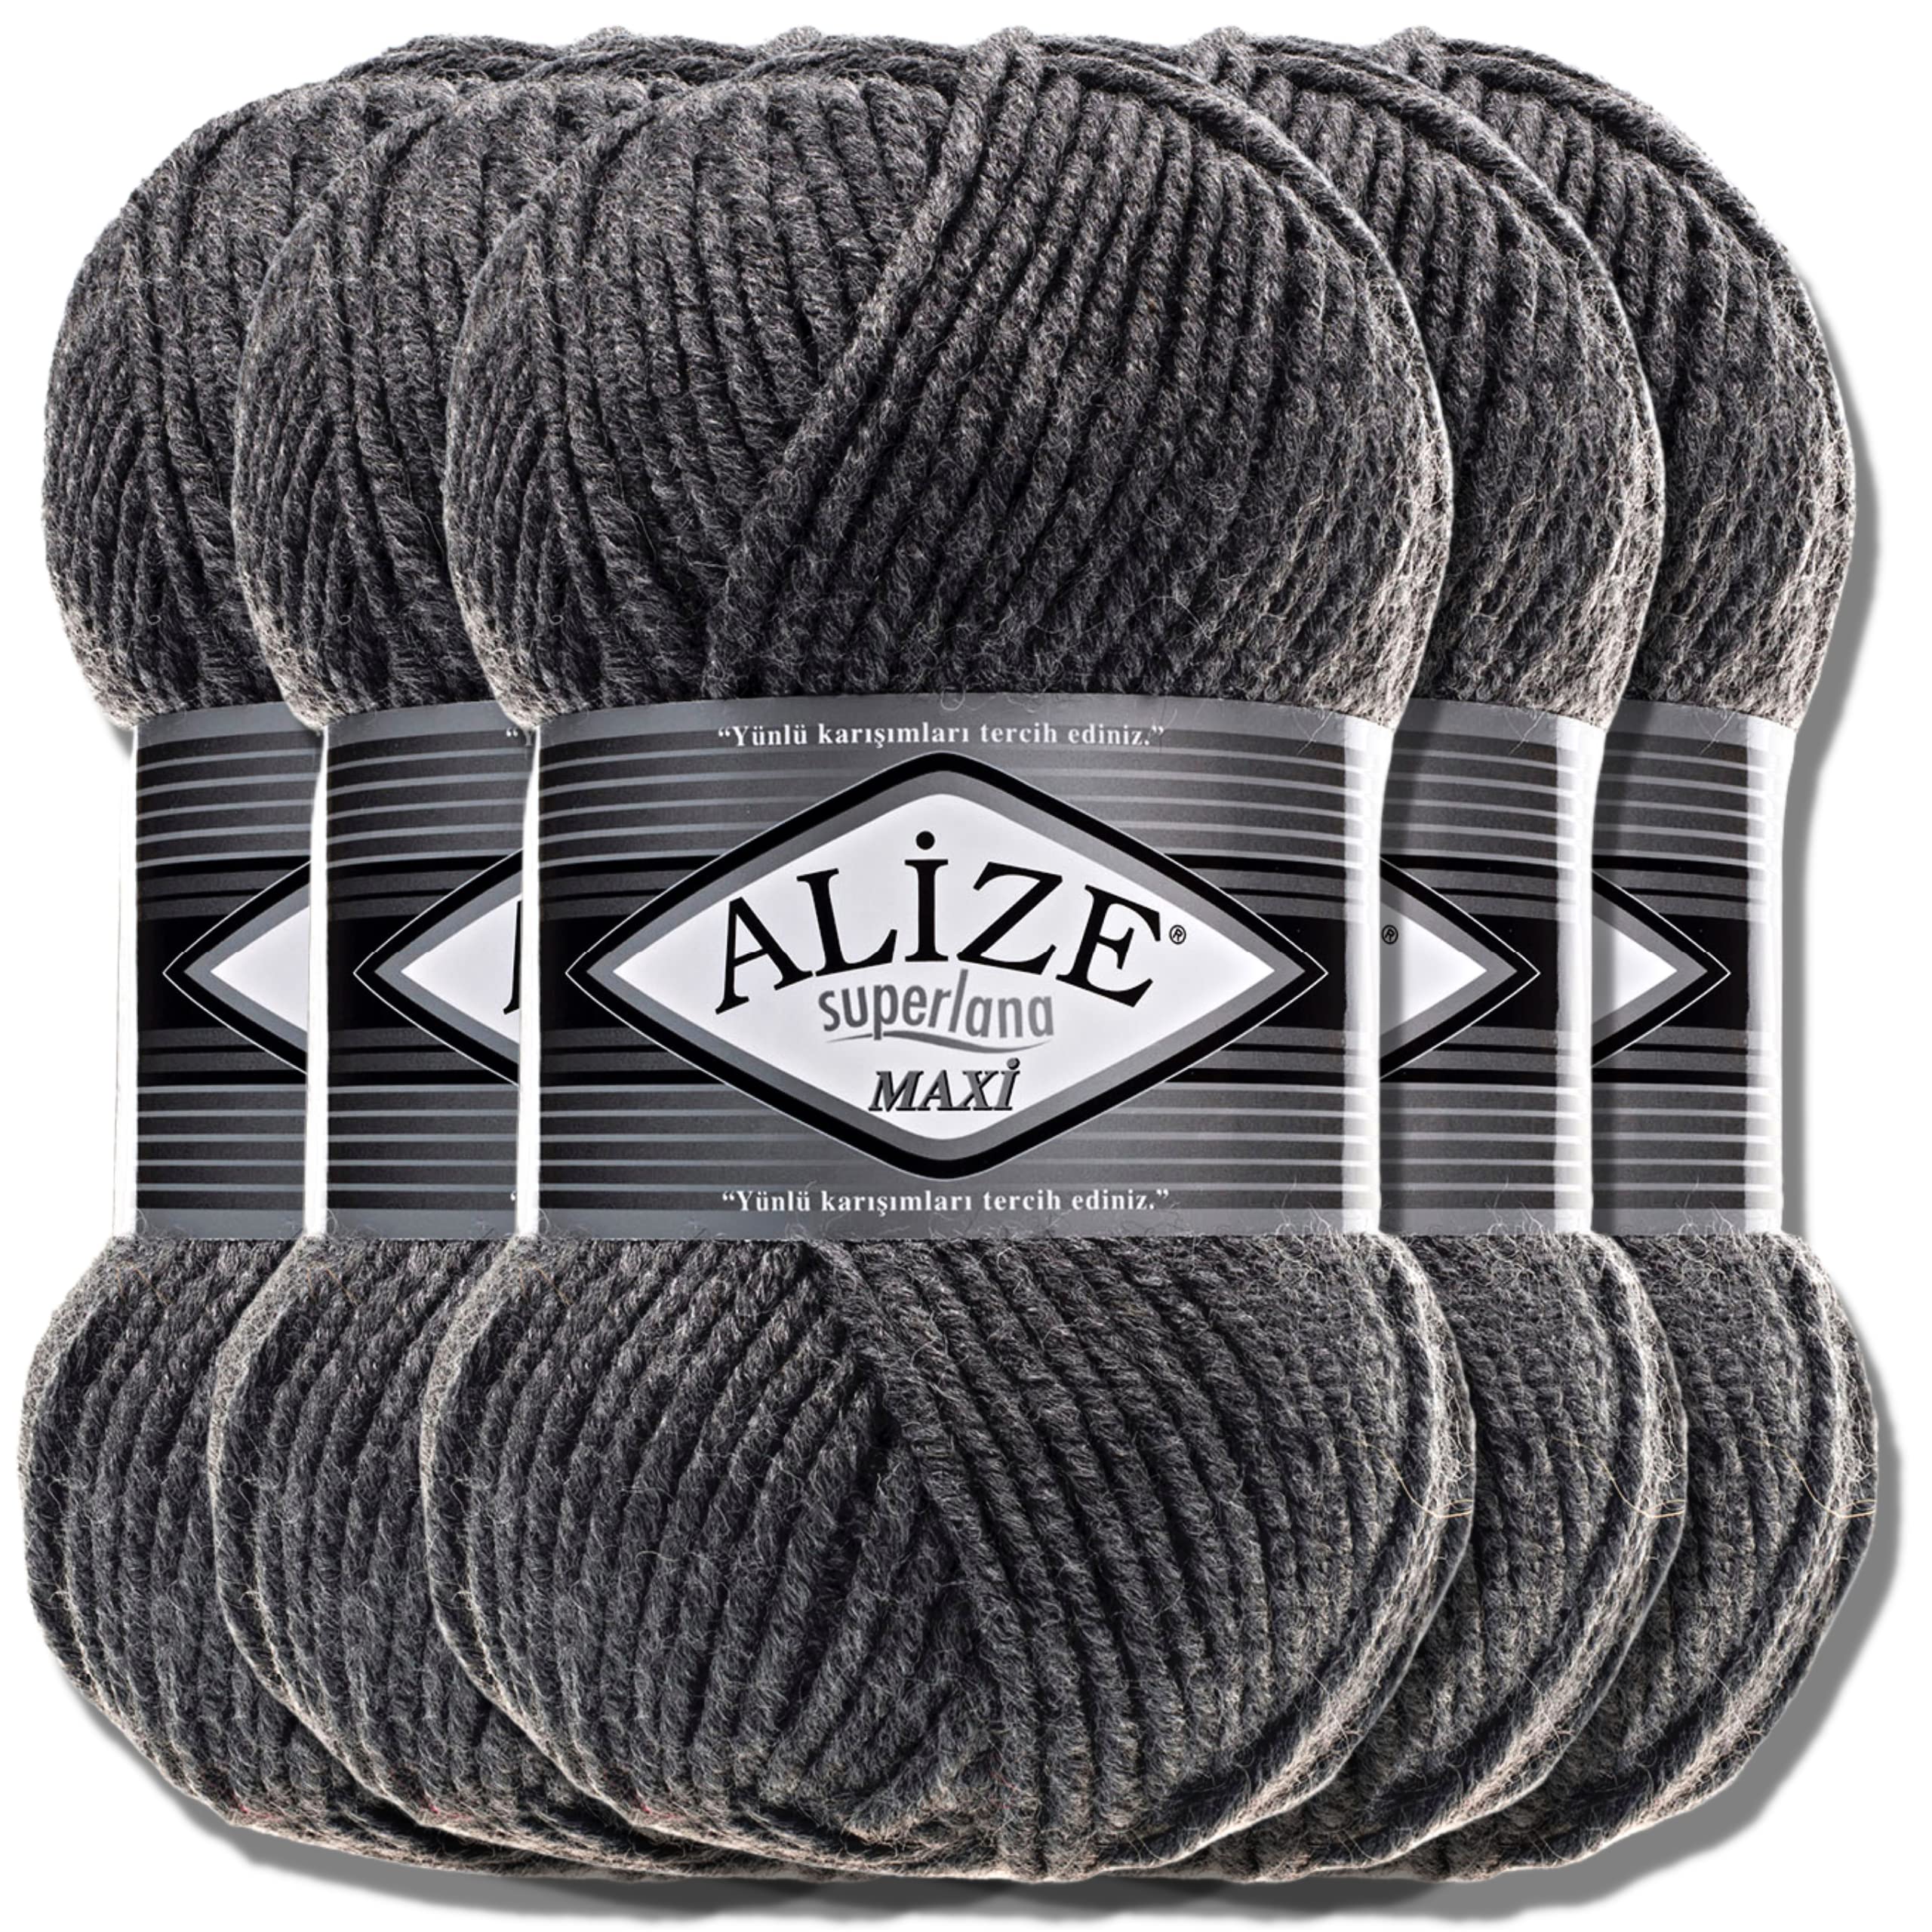 Alize 5 x 100g Superlana Maxi Türkische Premium Wolle Baumwolle und Acryl Uni Handstrickgarne | Yarn | Garn | Strickgarn Einfarbig Baby zum Häkeln Stricken Kleidung Schals (Medium Grey Melange |182)